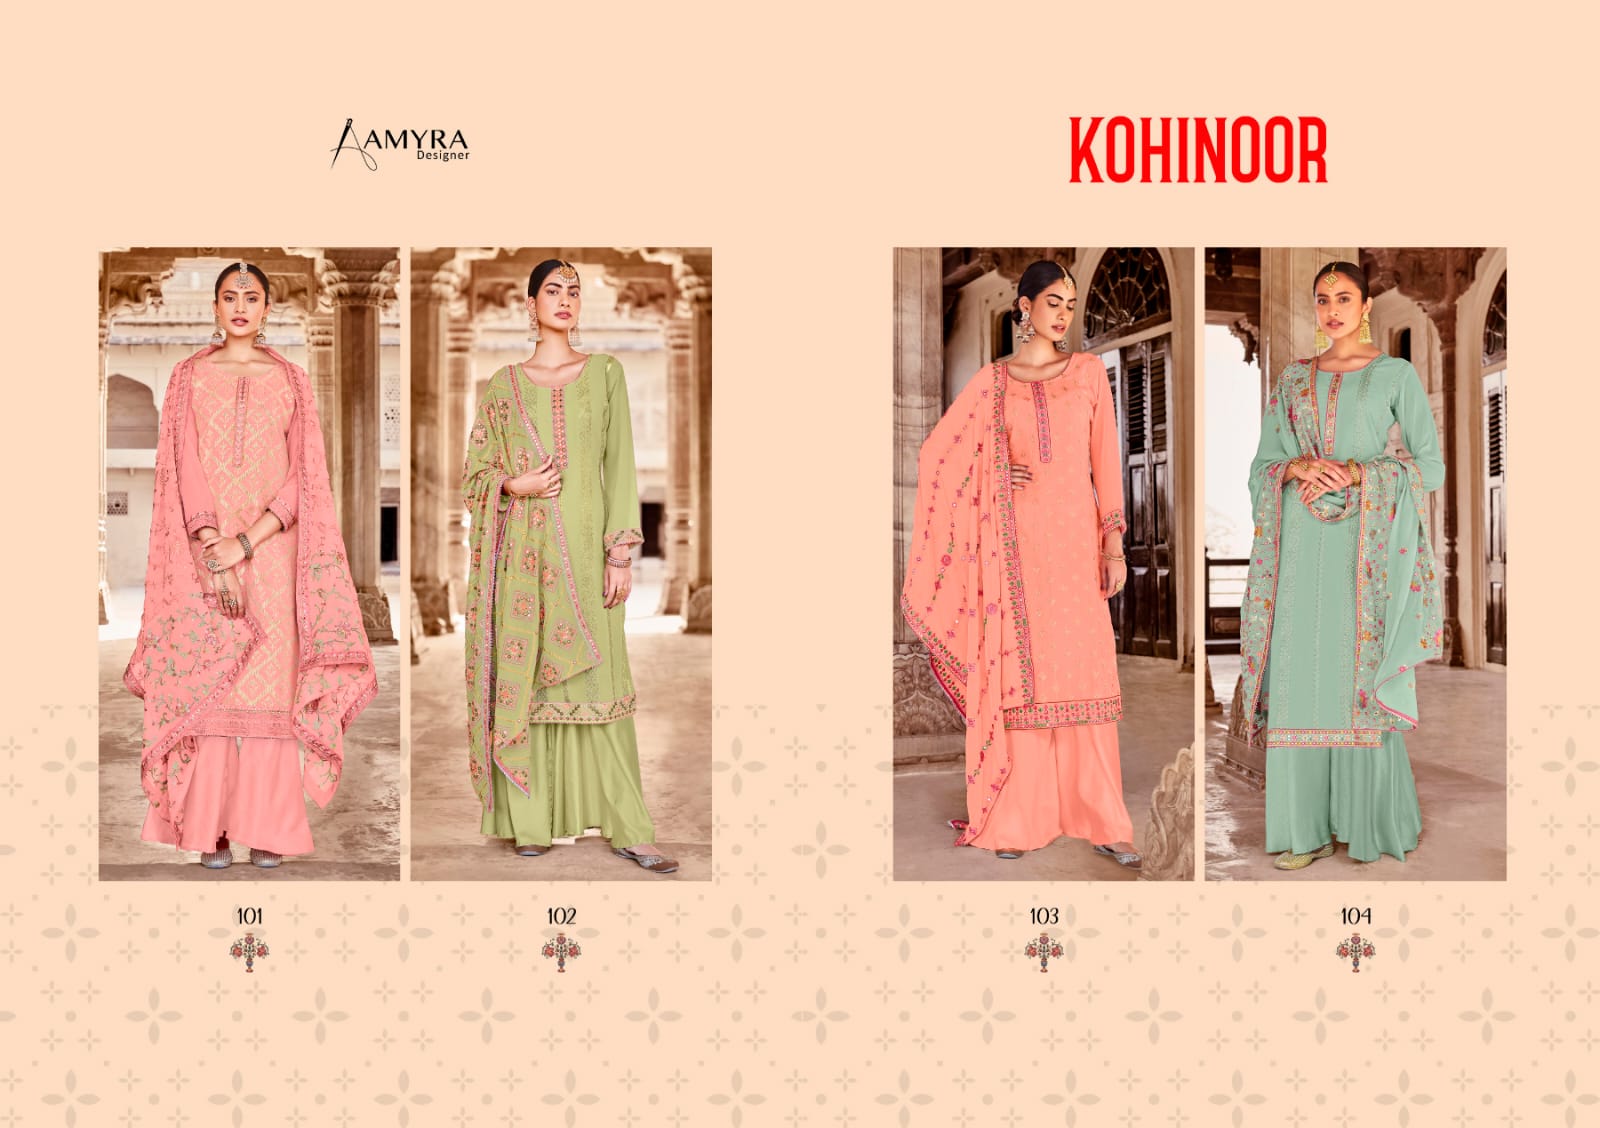 Aamyra Designer Kohinoor 101-104